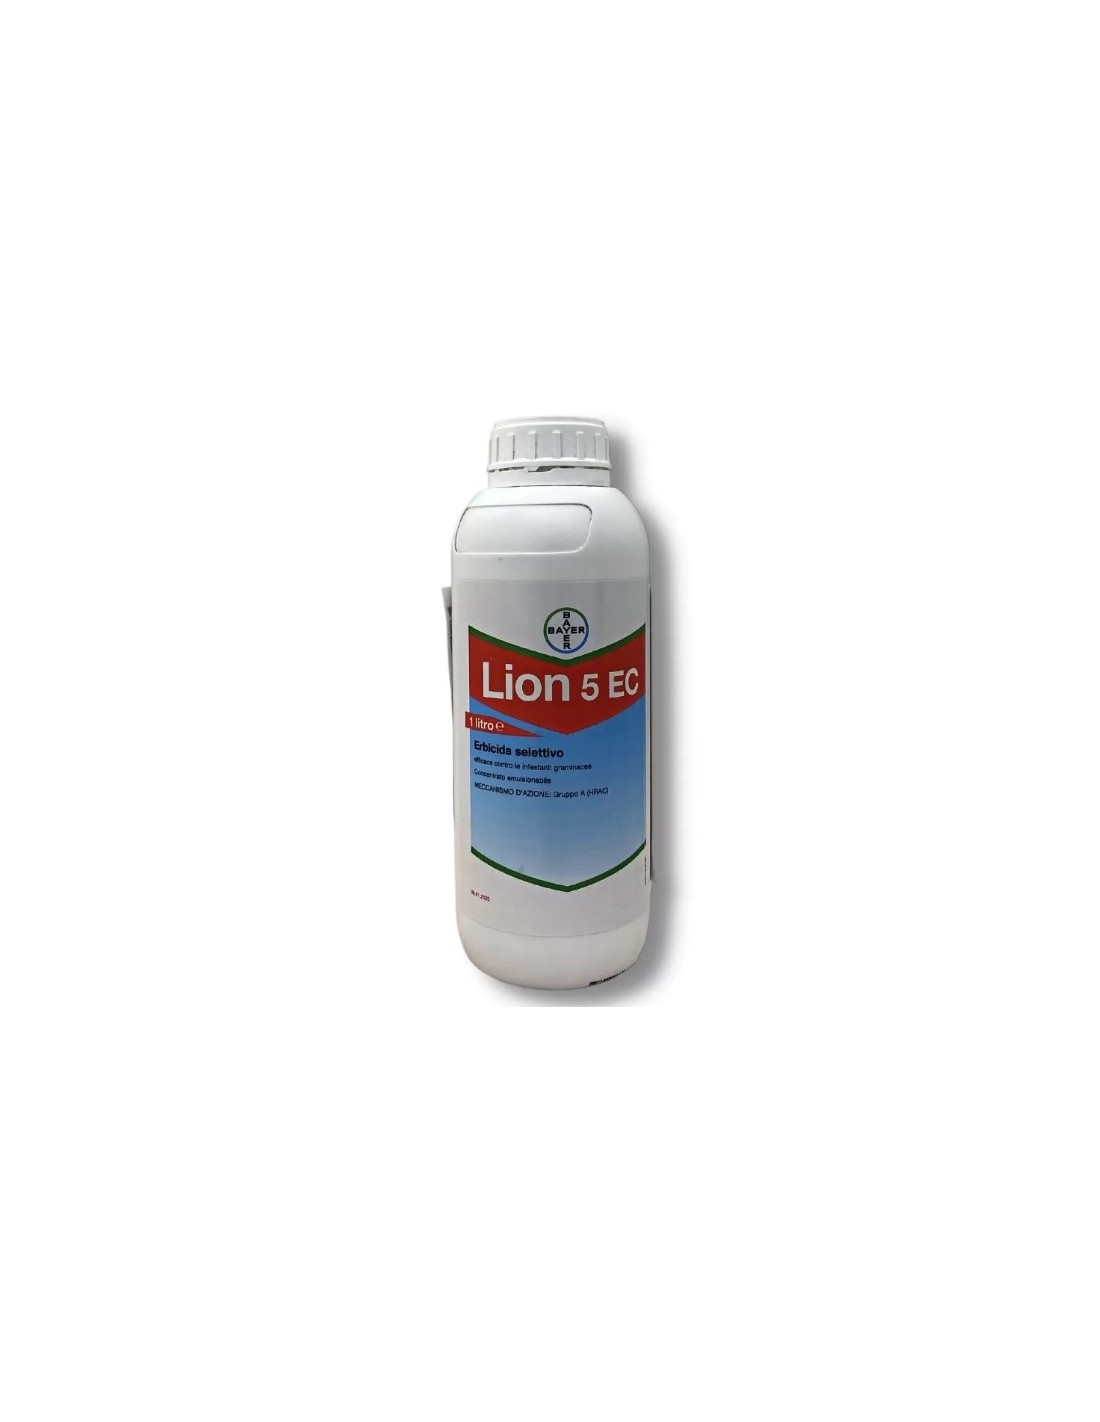 LION 5 EC LT.1 Miglior Prezzo € 20,86